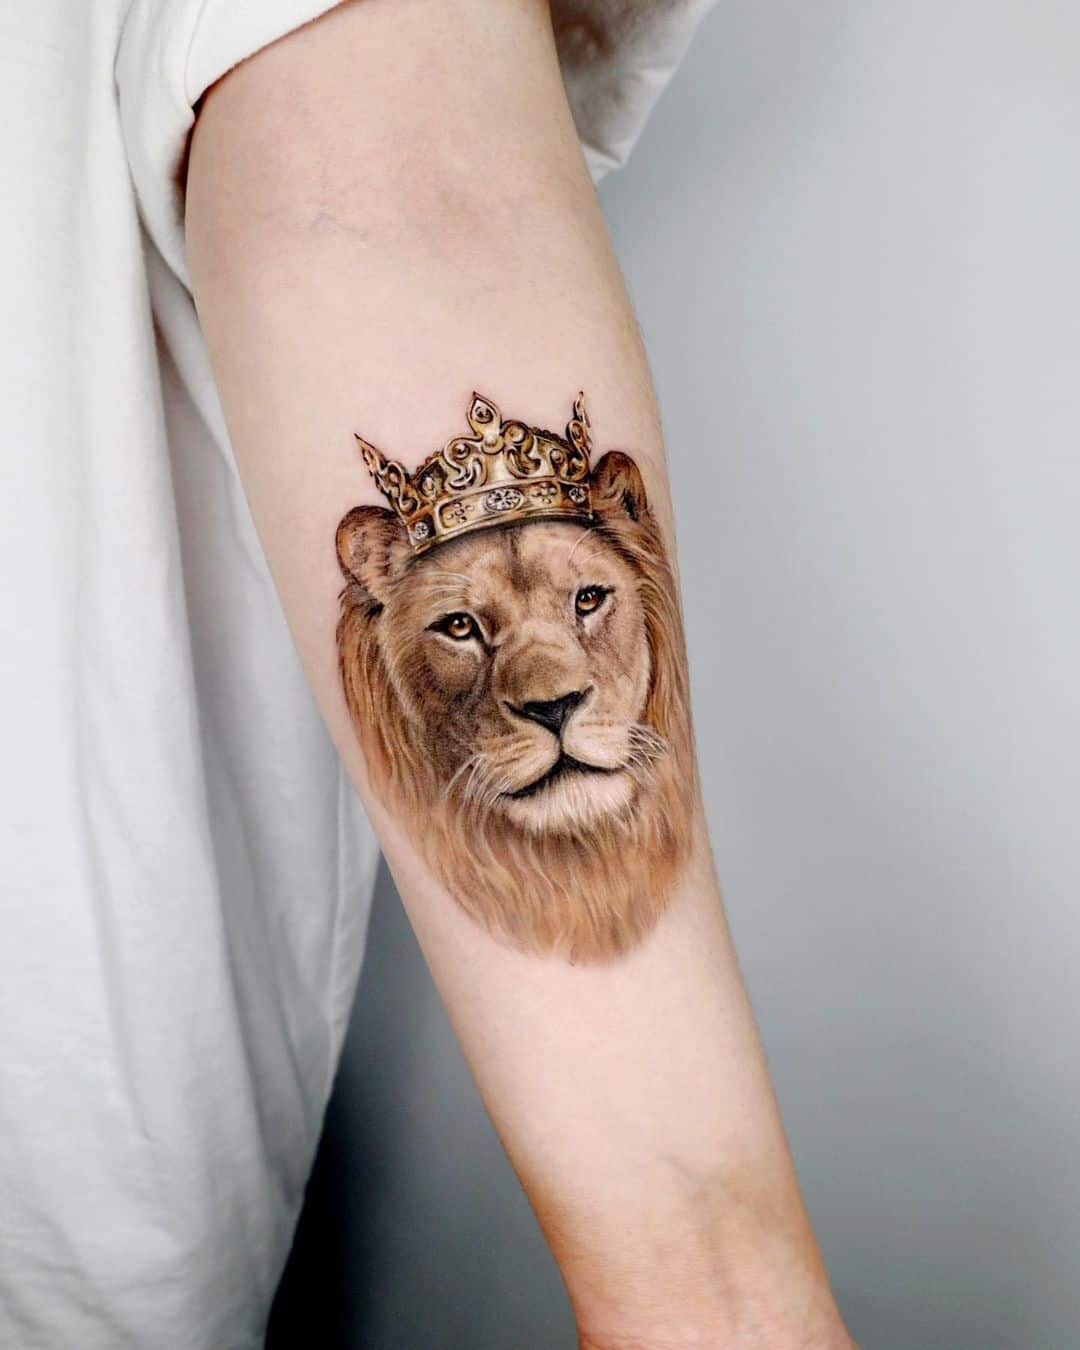 Realistic animal tattoo by tattooist siia